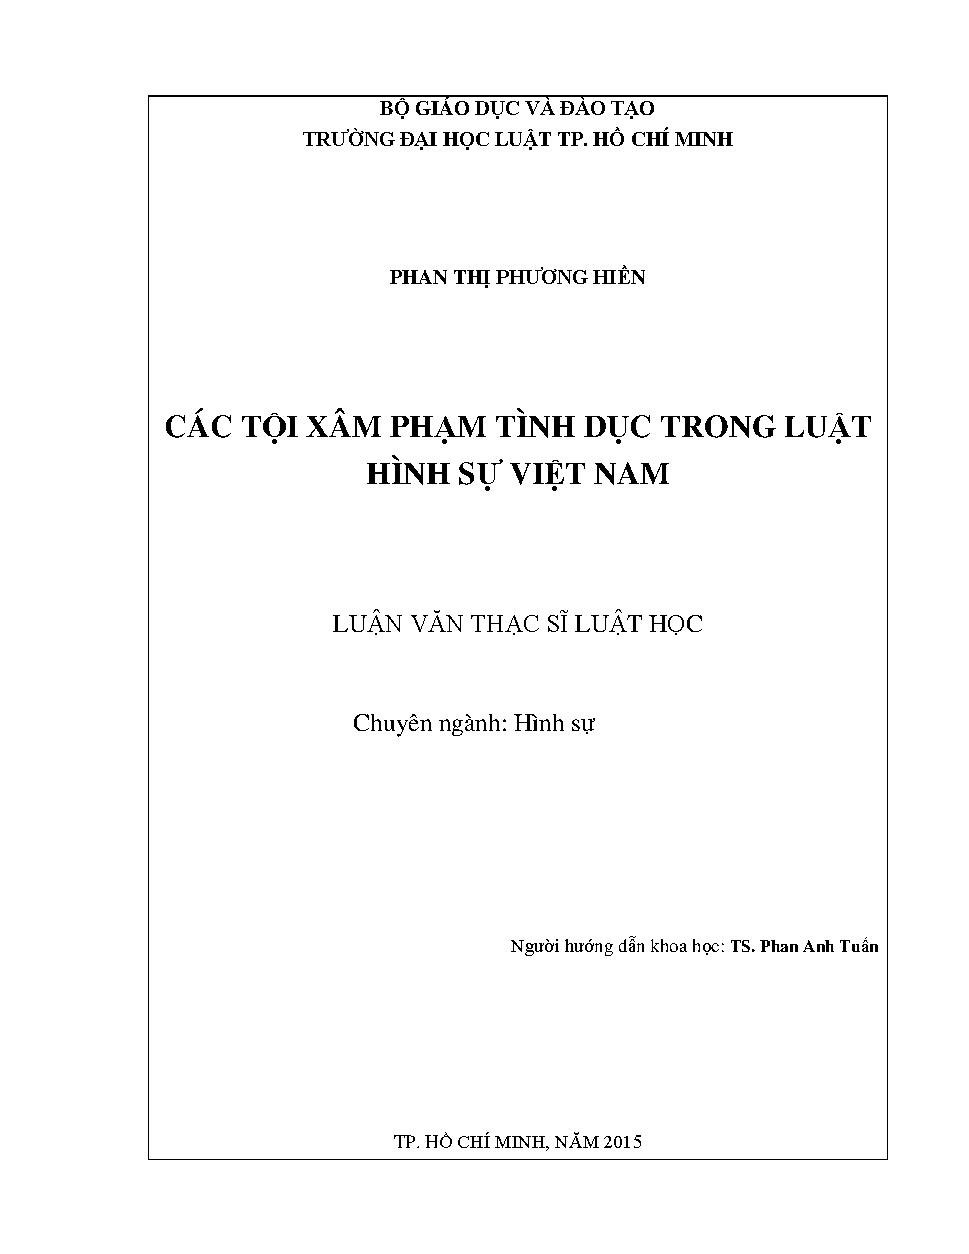 Các tội xâm phạm tình dục trong luật hình sự Việt Nam